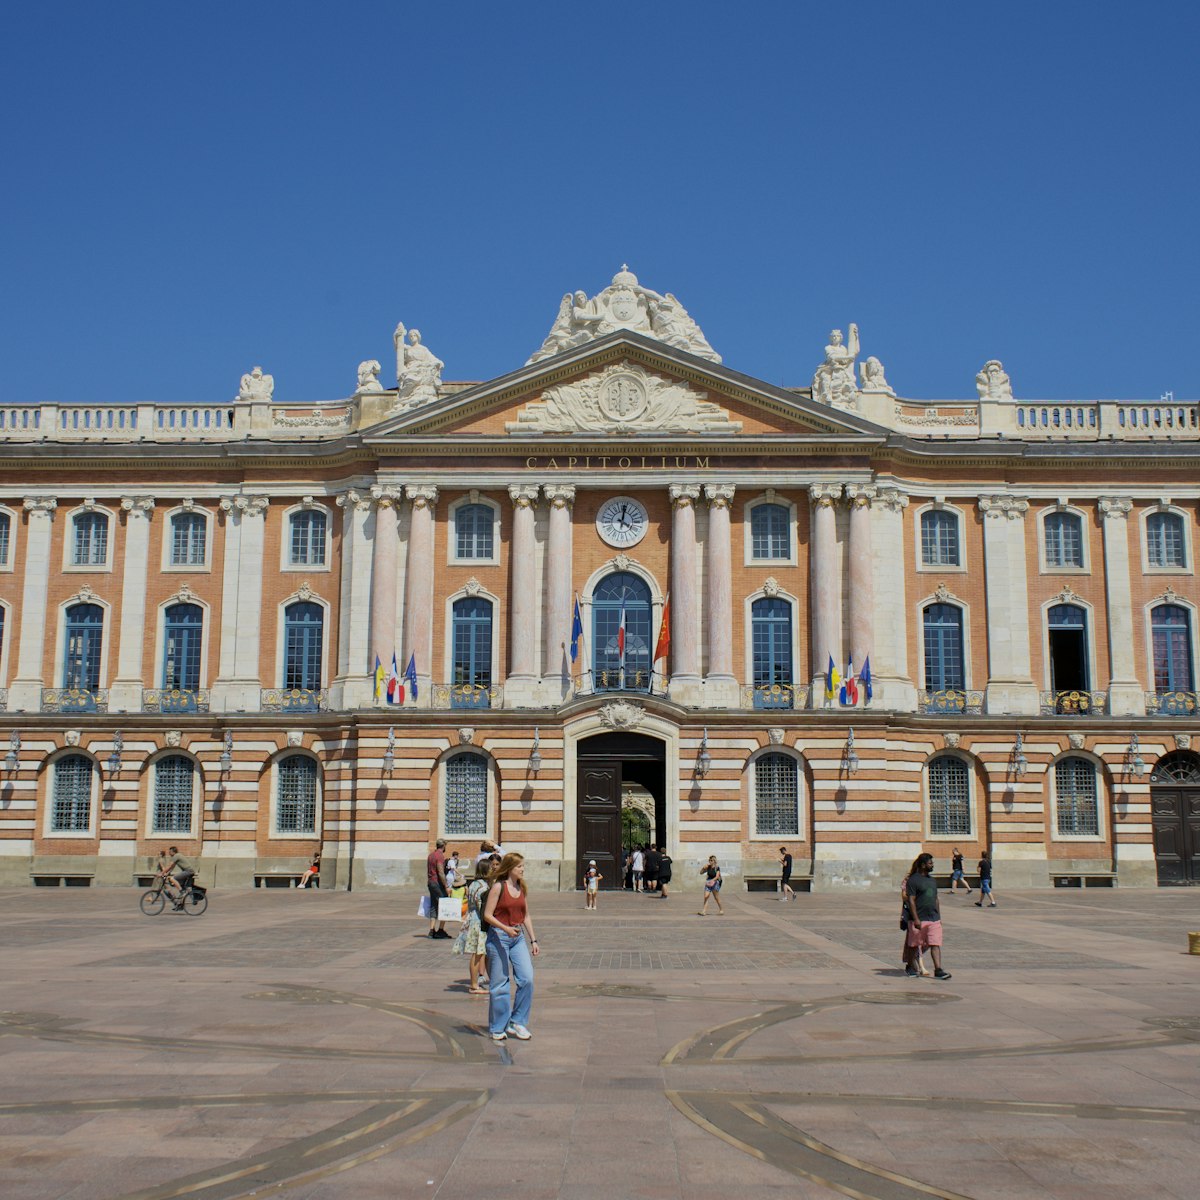 Place du Capitole, Toulouse, France.